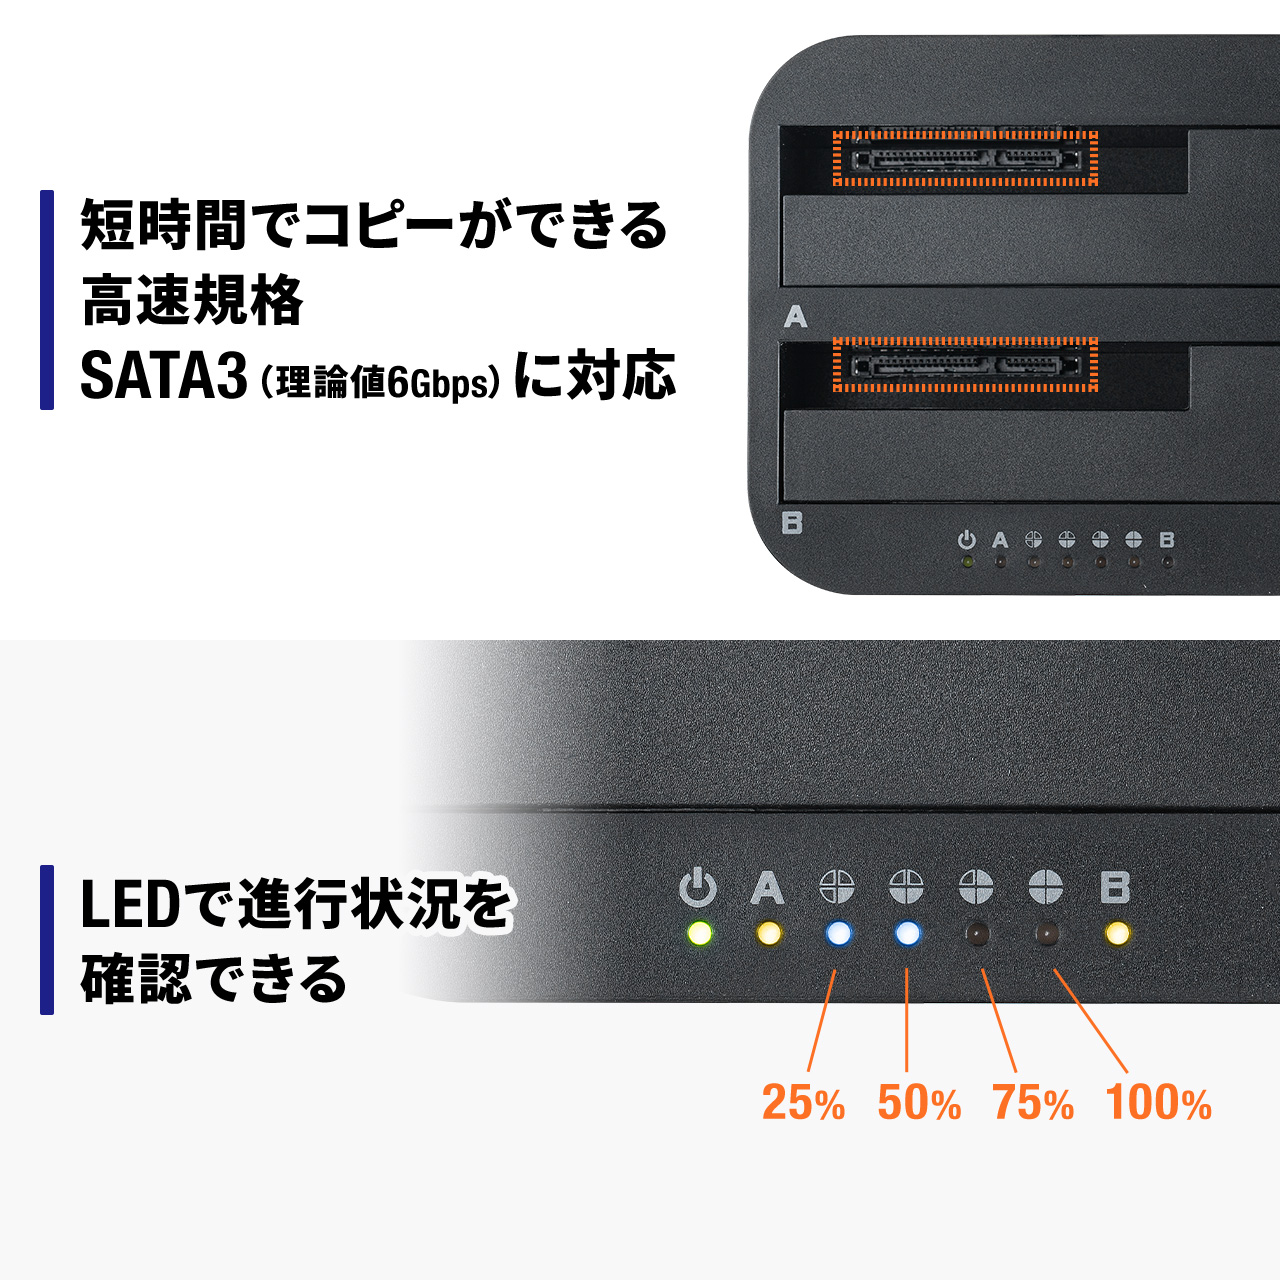 ハードディスクリーダー HDDドッキングステーション SSDドッキングステーション デュプリケーター SSDスタンド 2ベイ 2.5インチ 3.5インチ両対応 最大16TB対応 800-TK049